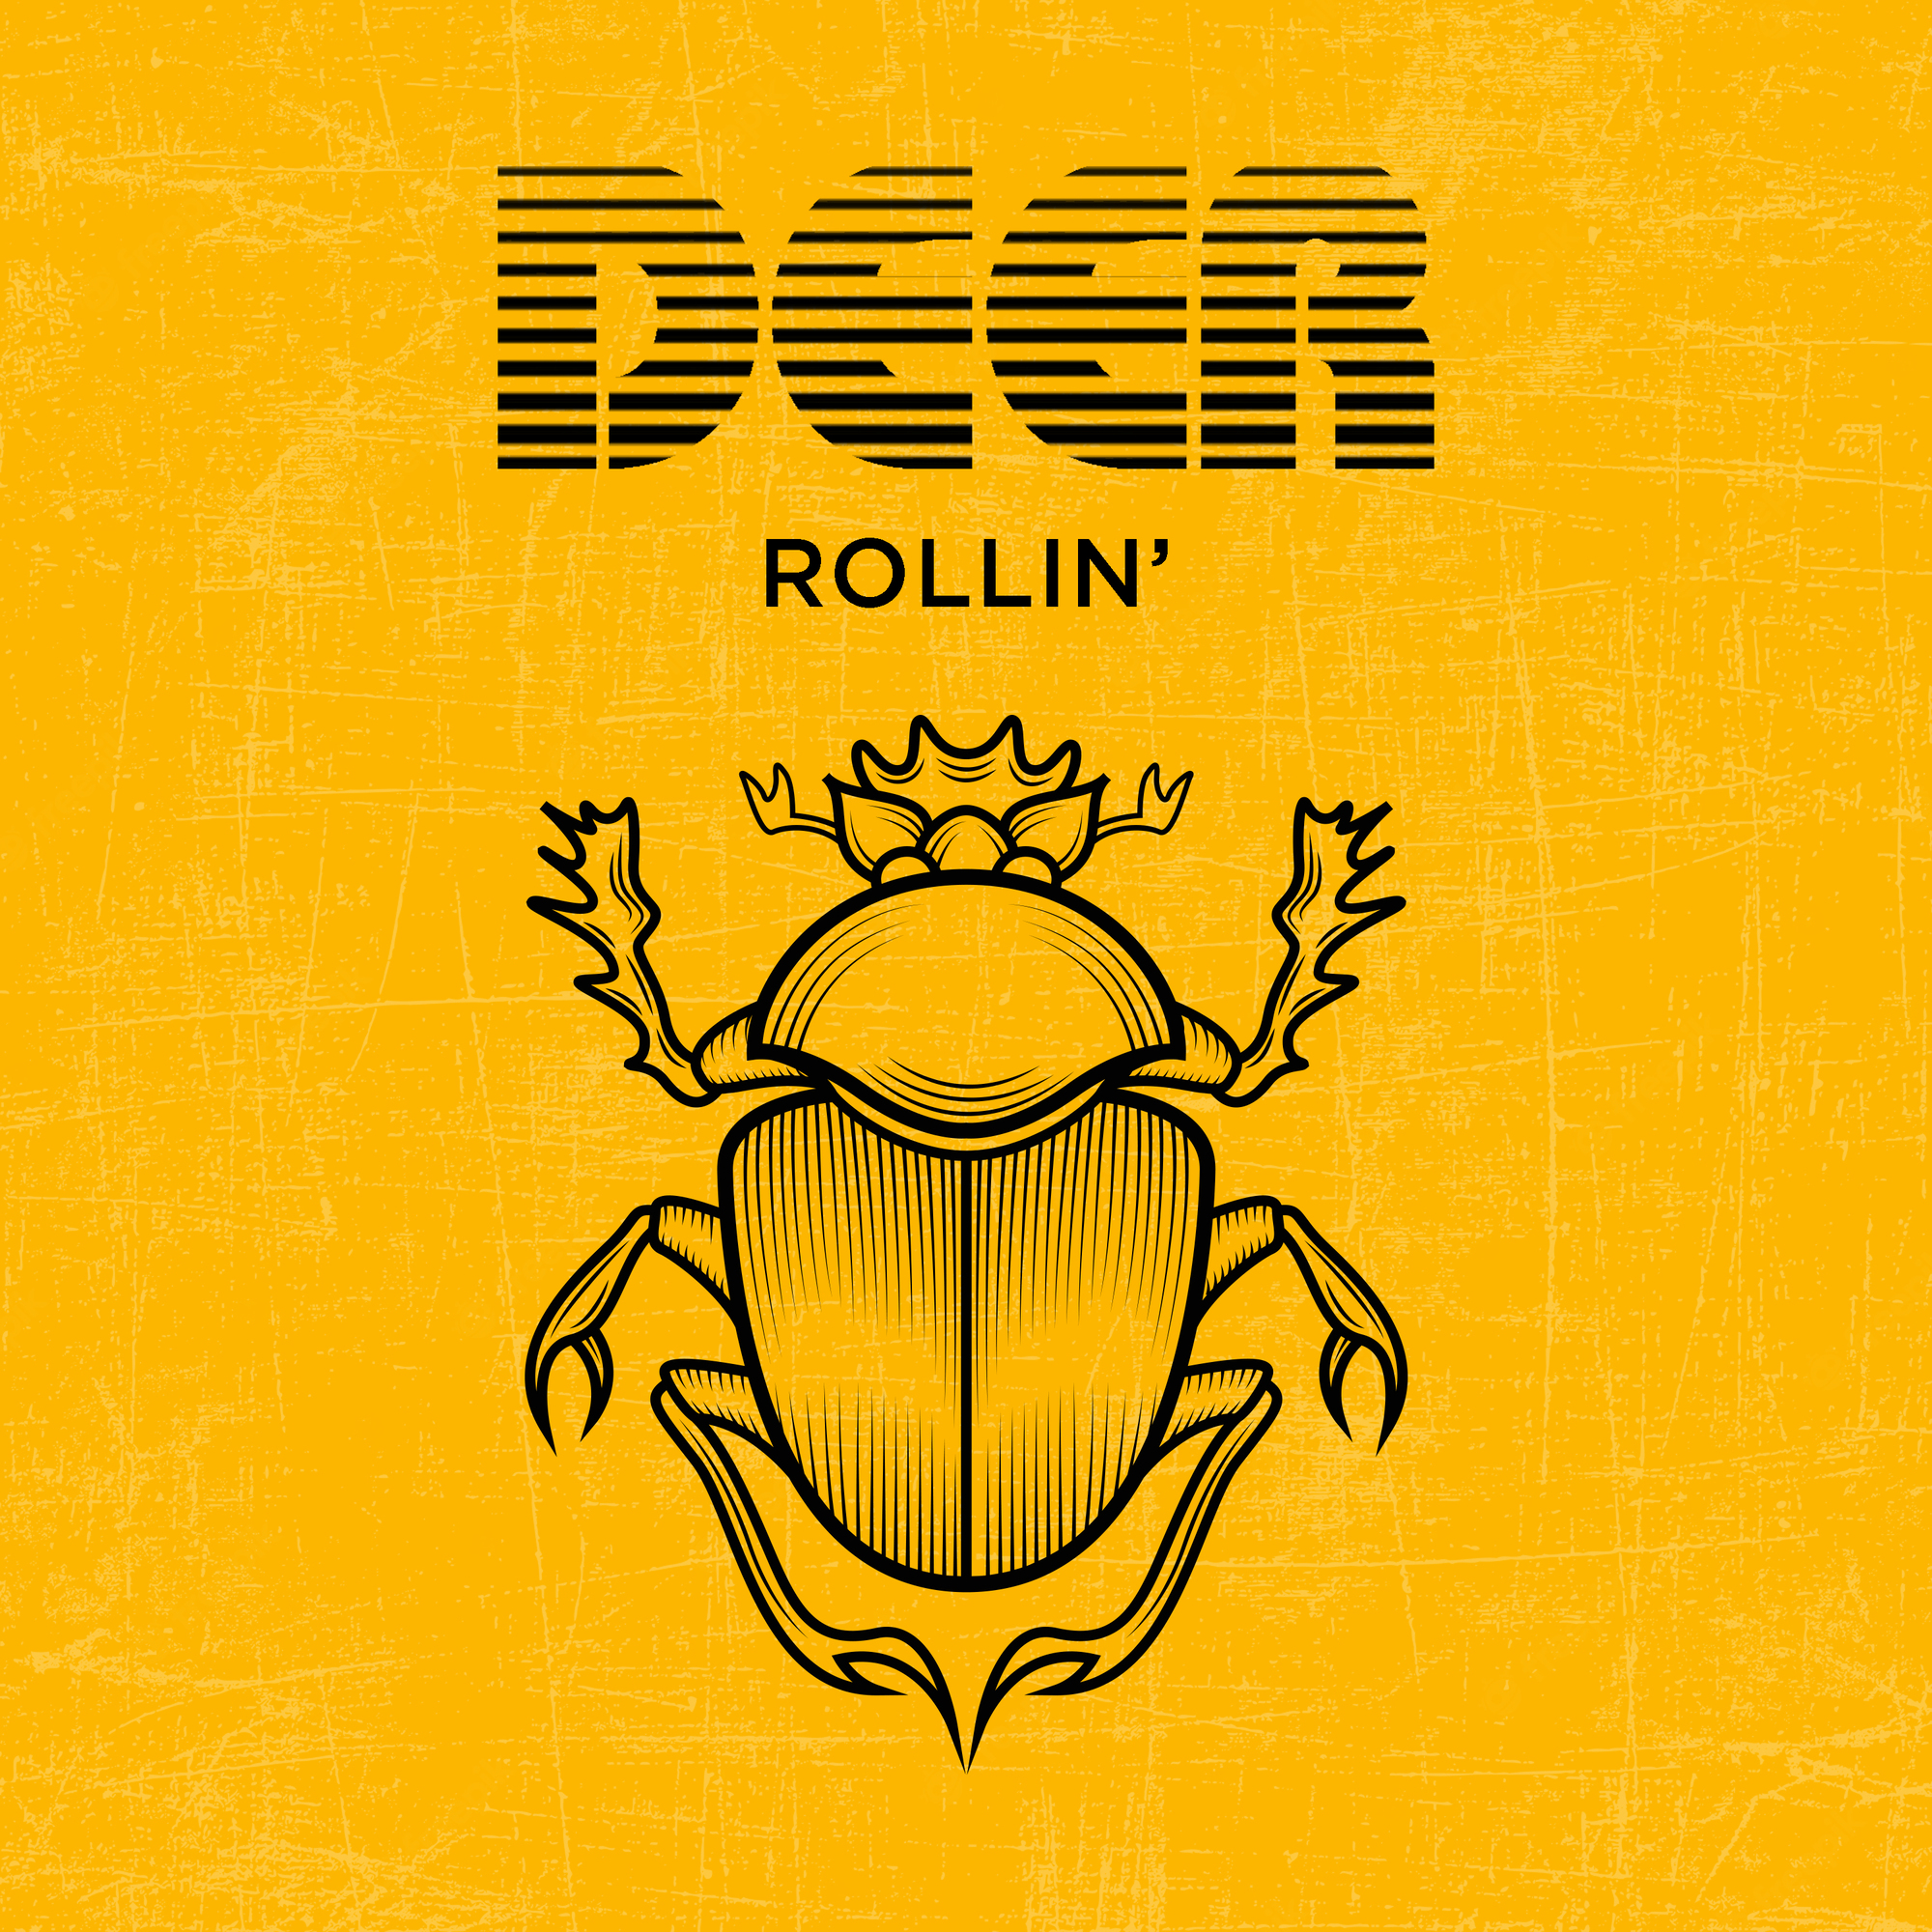 'Rolling' se lanzará el próximo 29 de marzo en todas las plataformas digitales.
(Deer MX)